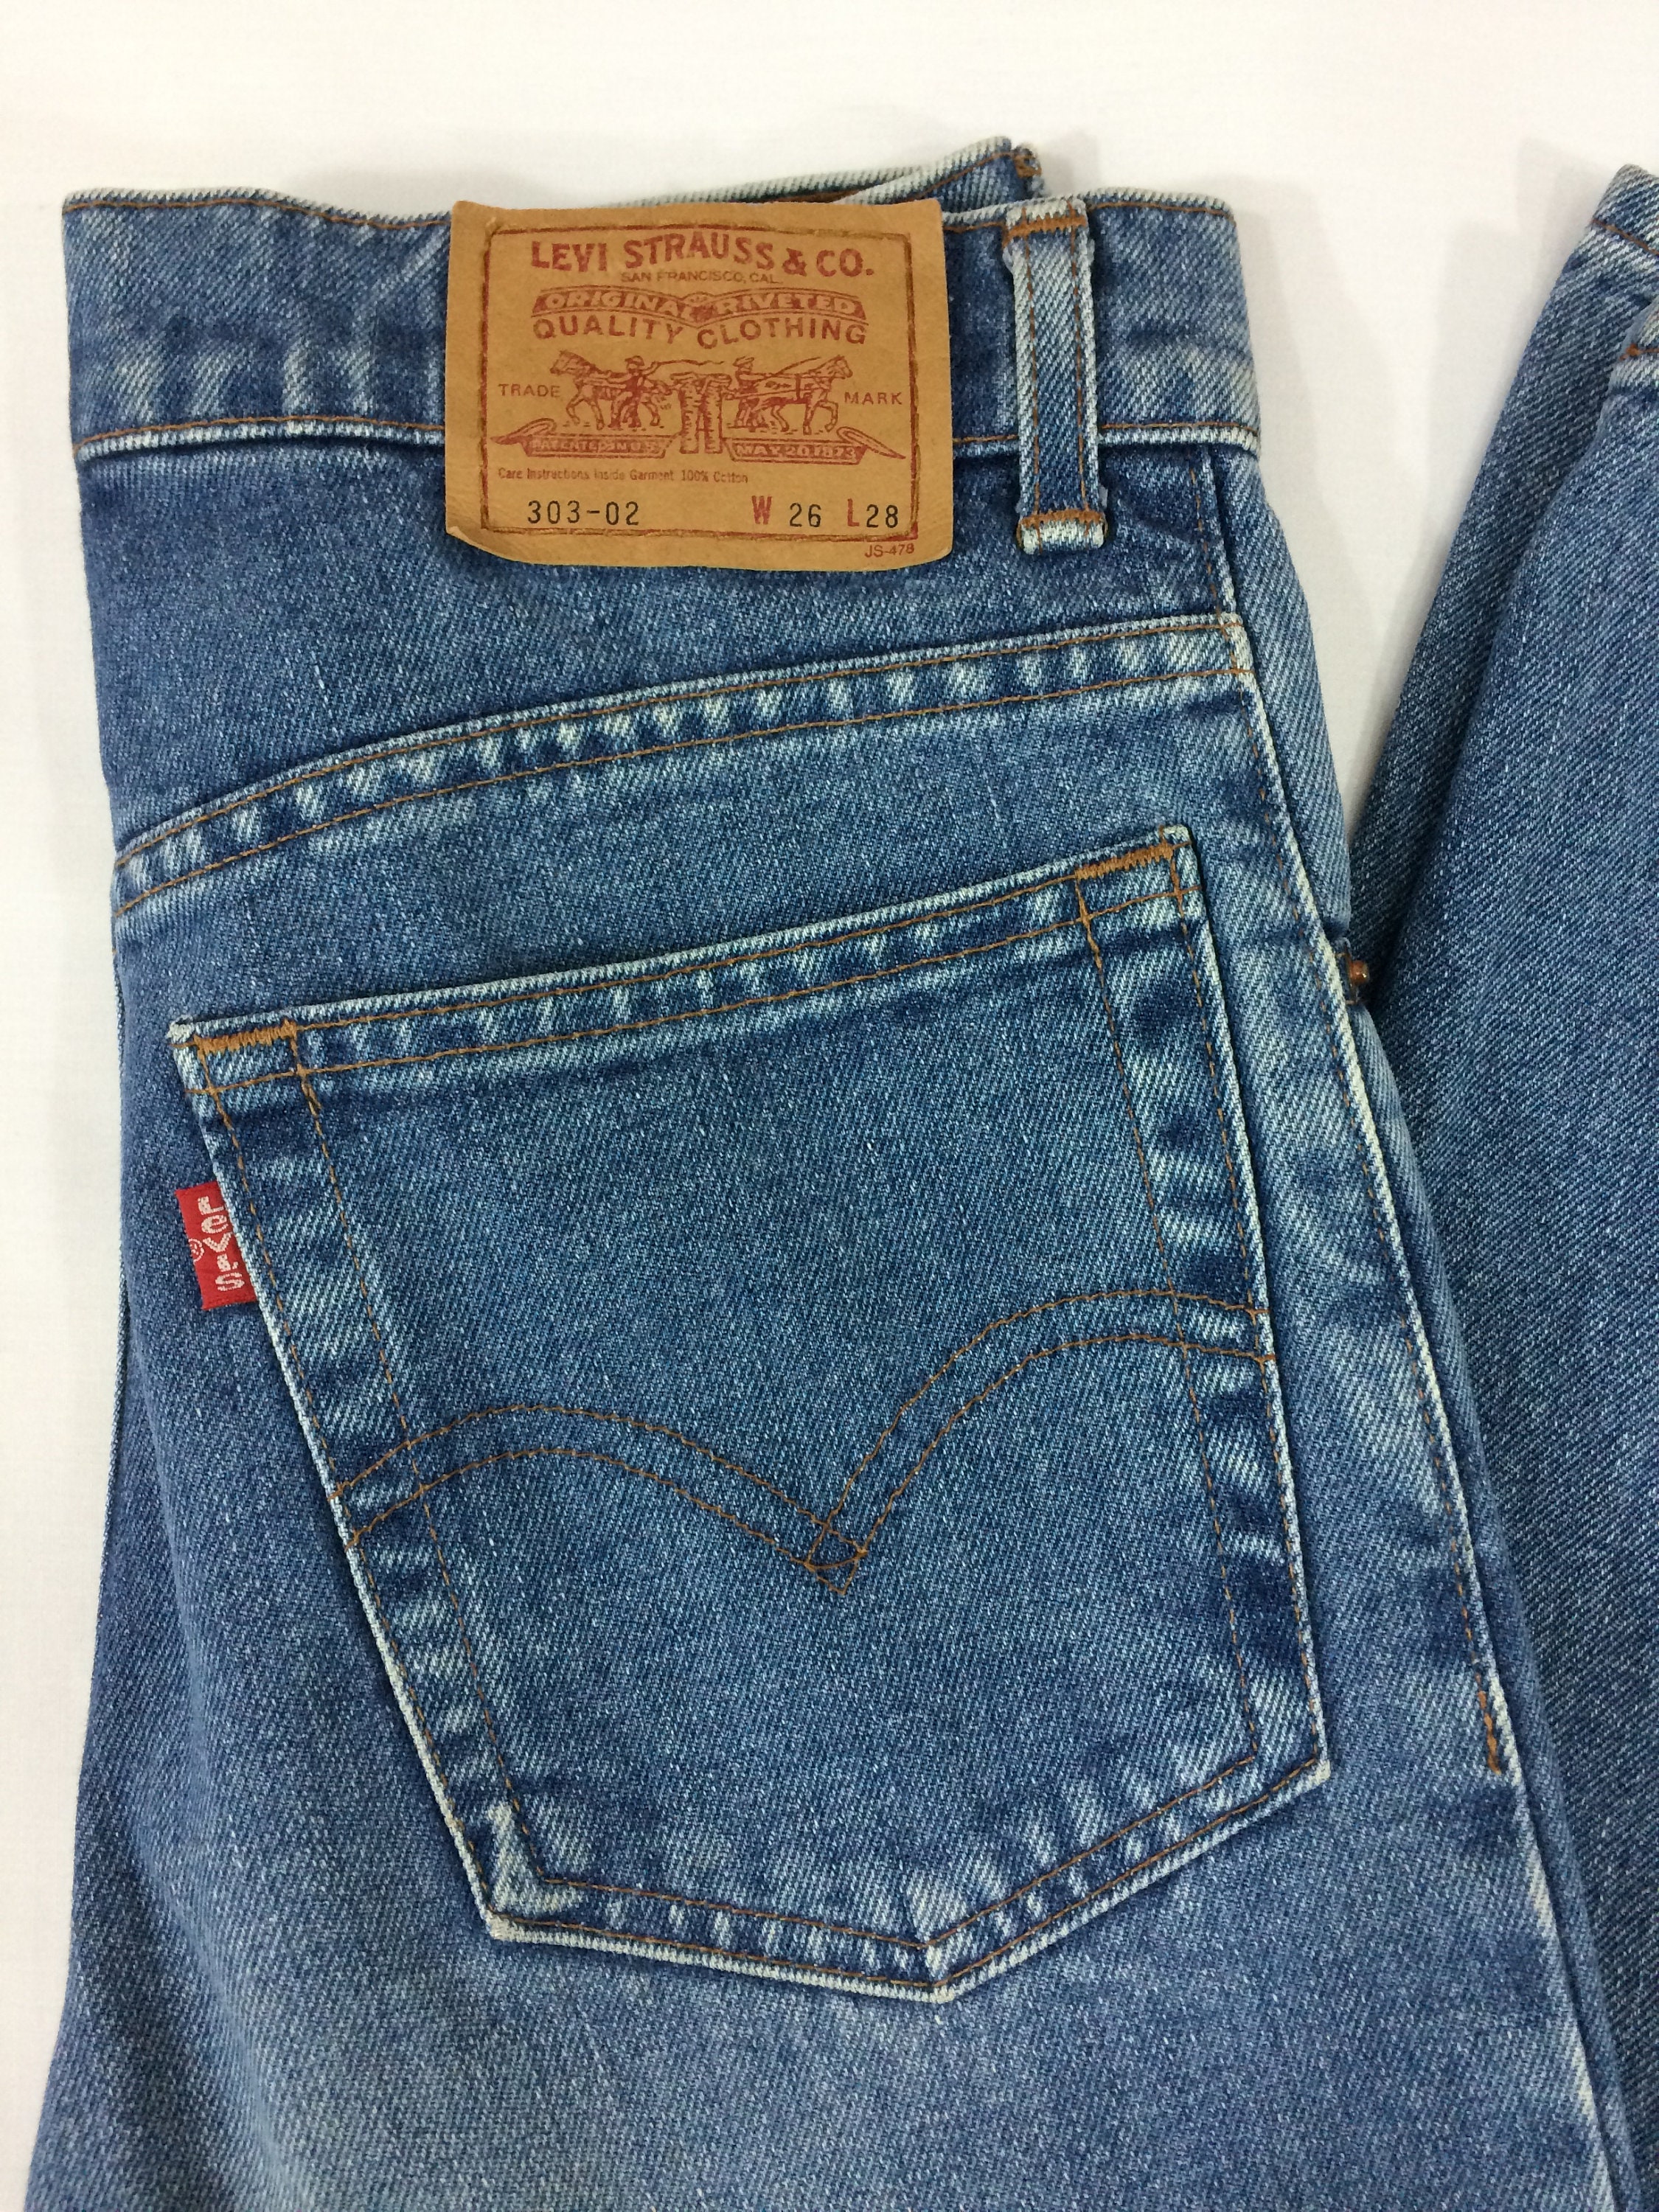 Sz 26 Vintage Levi's 303 Tiny Small Waist Jeans W26 L28 - Etsy